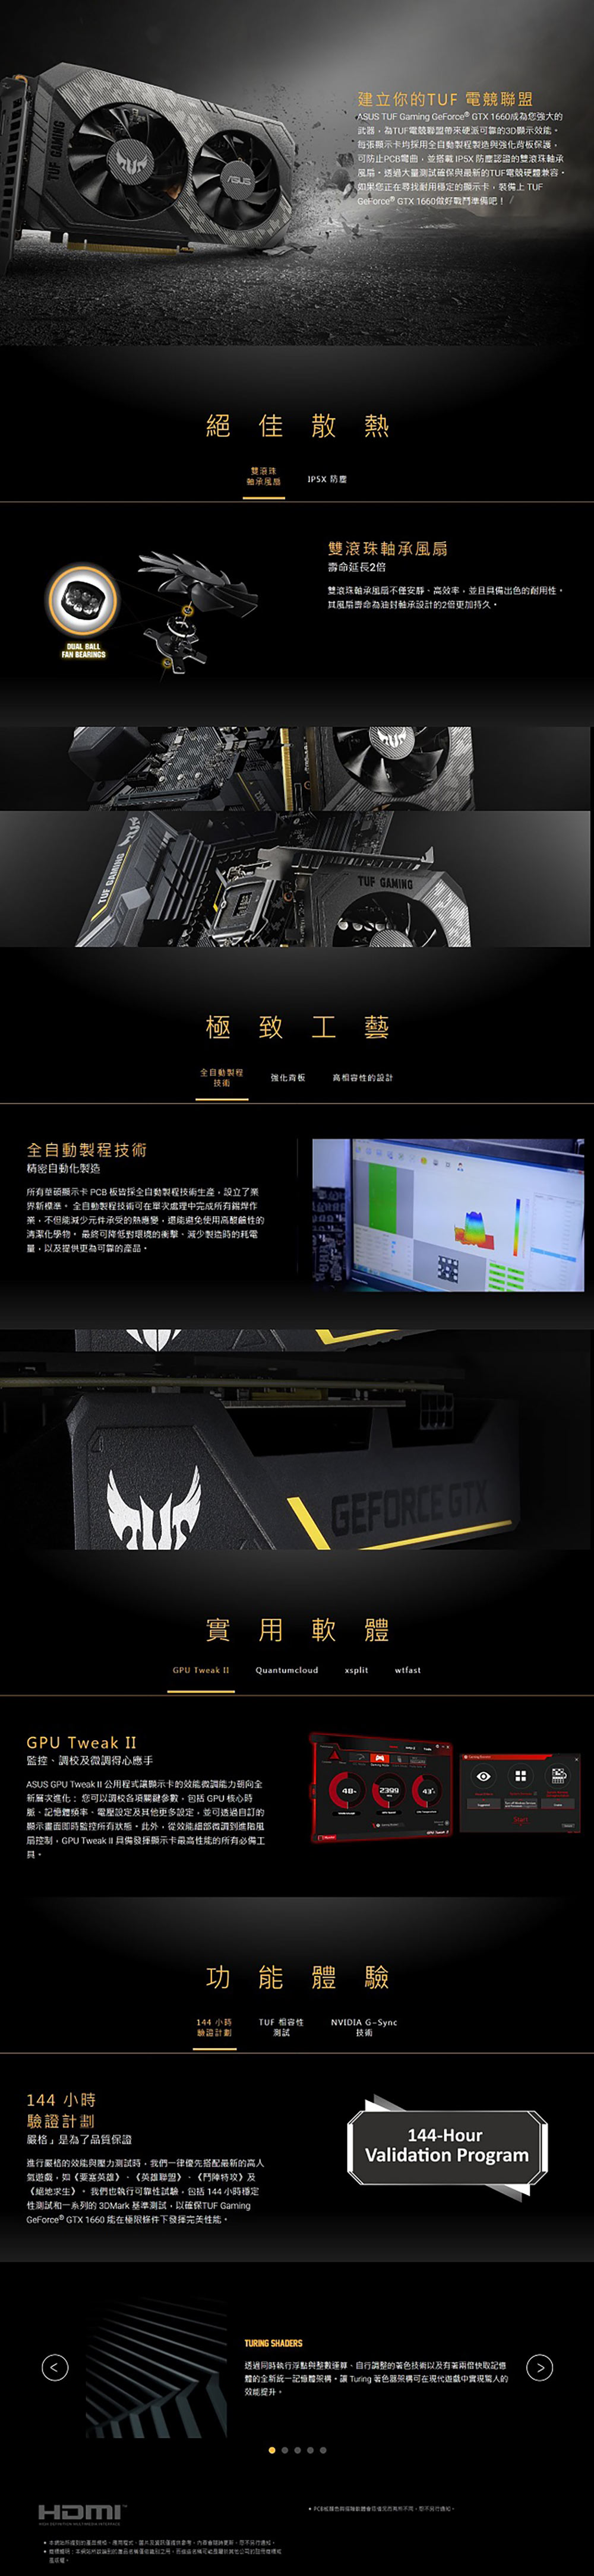 華碩 ASUS TUF GeForce GTX™ 1660 O6G GAMING 顯示卡